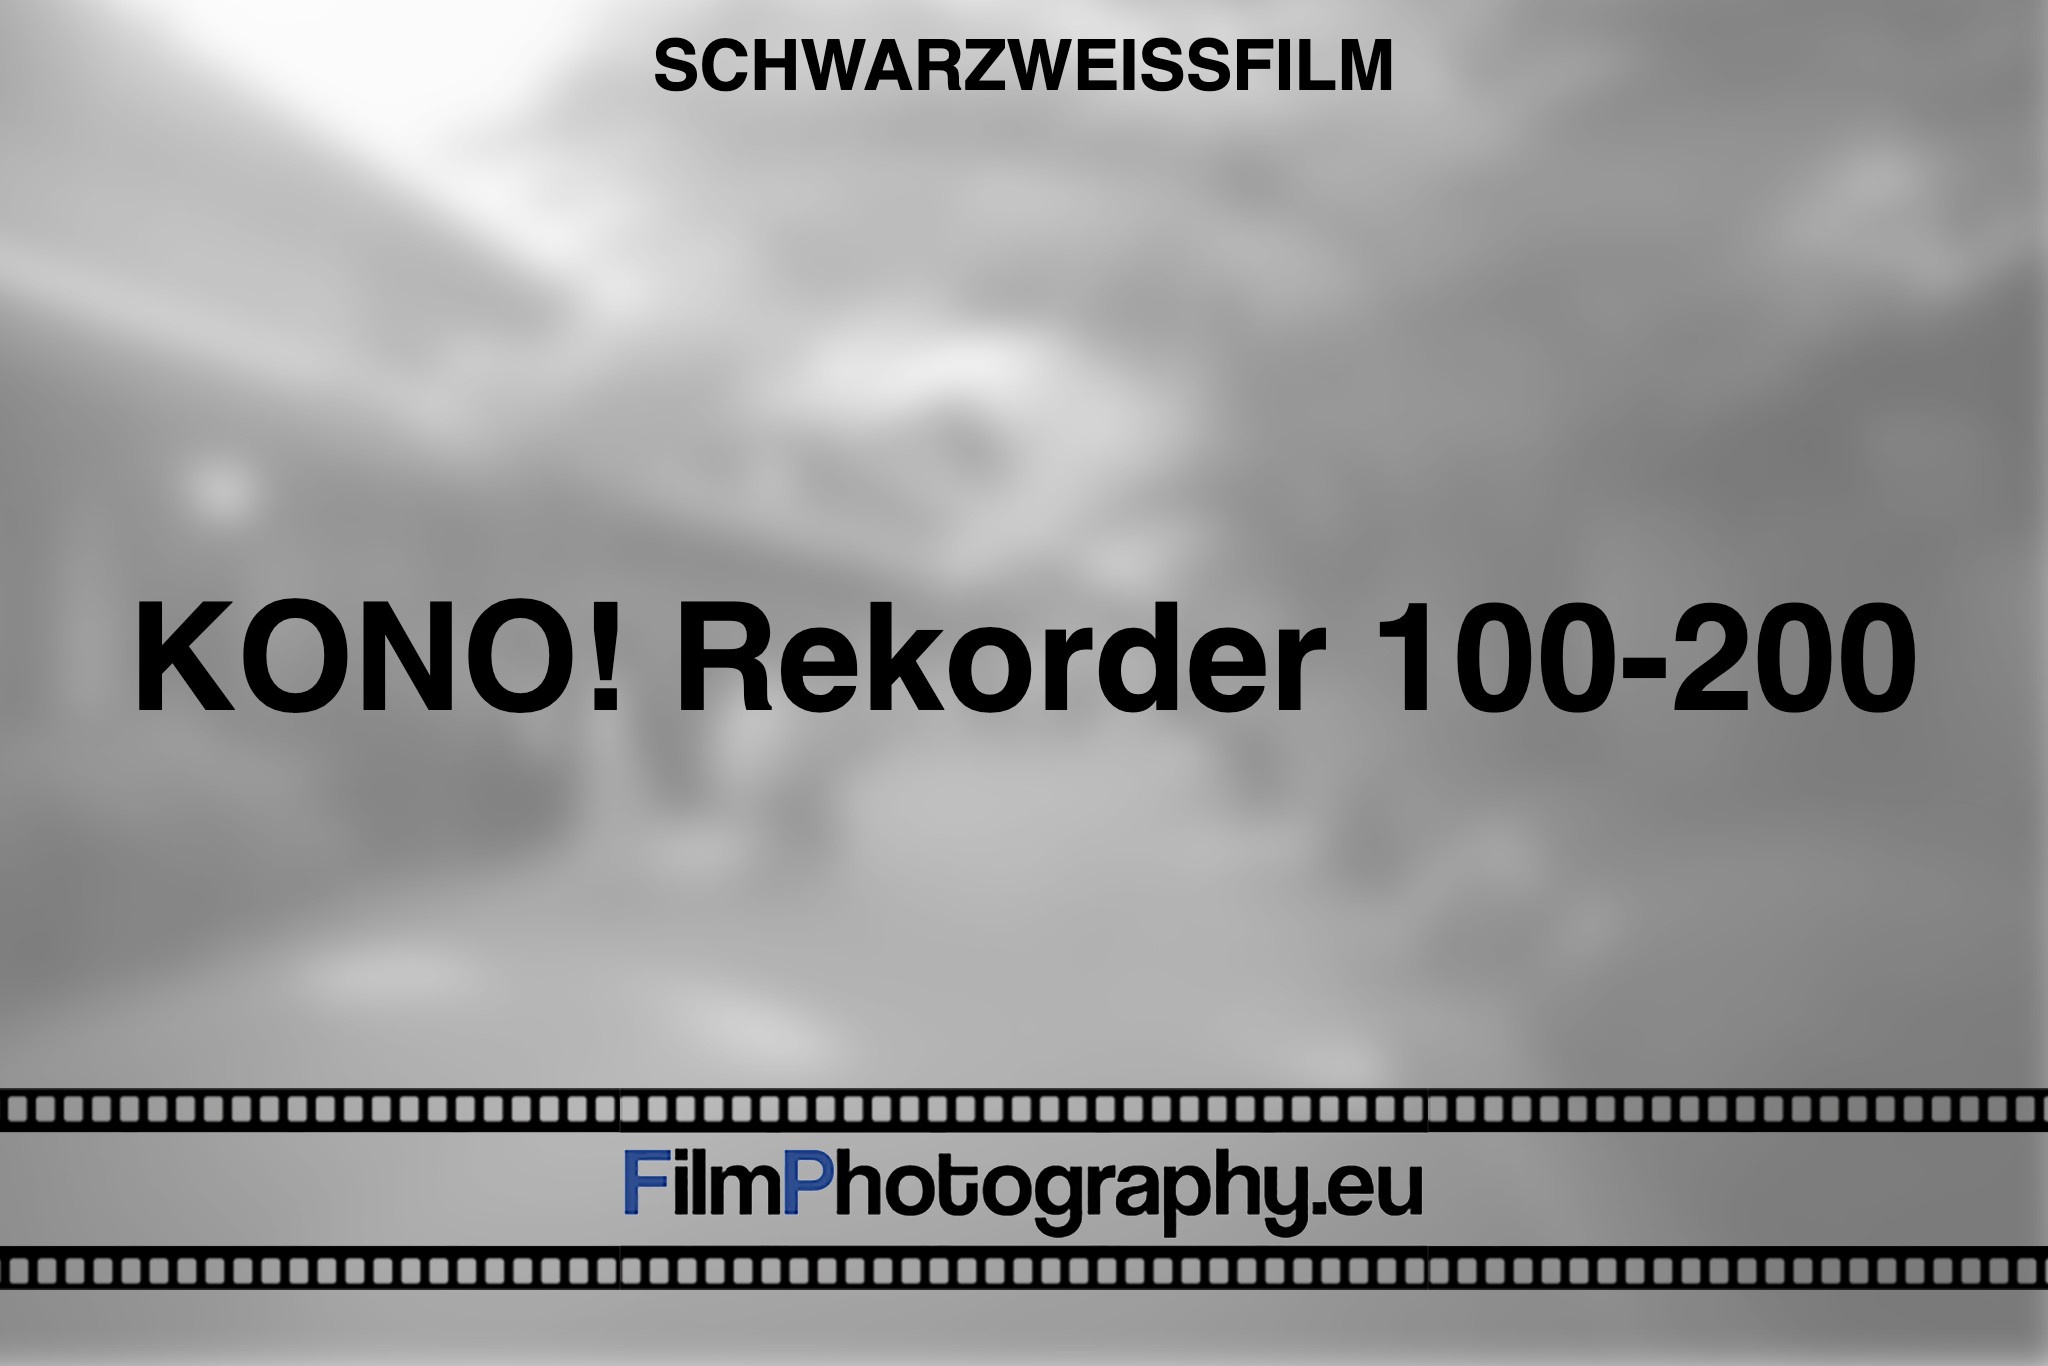 kono-rekorder-100-200-schwarzweißfilm-bnv